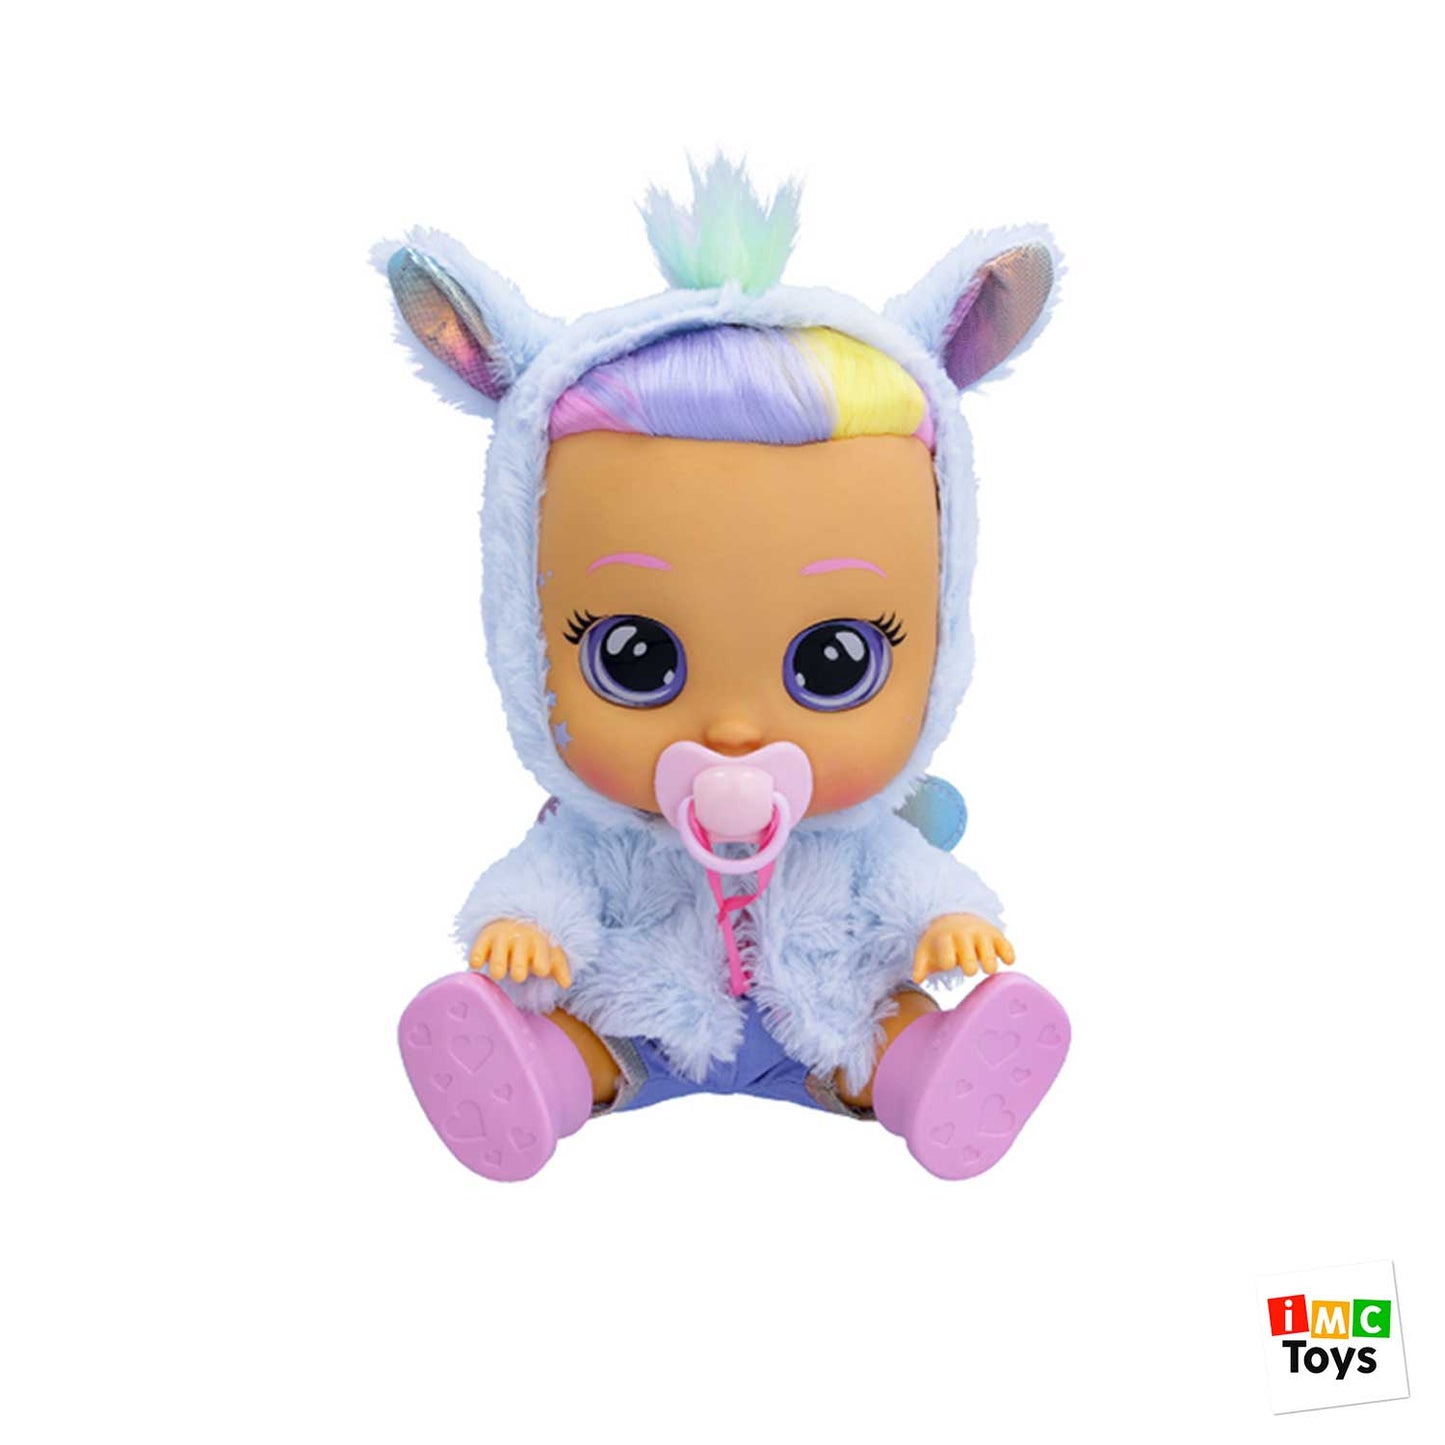 IMC Toys - Cry Babies Dressy Fantasy Jenna